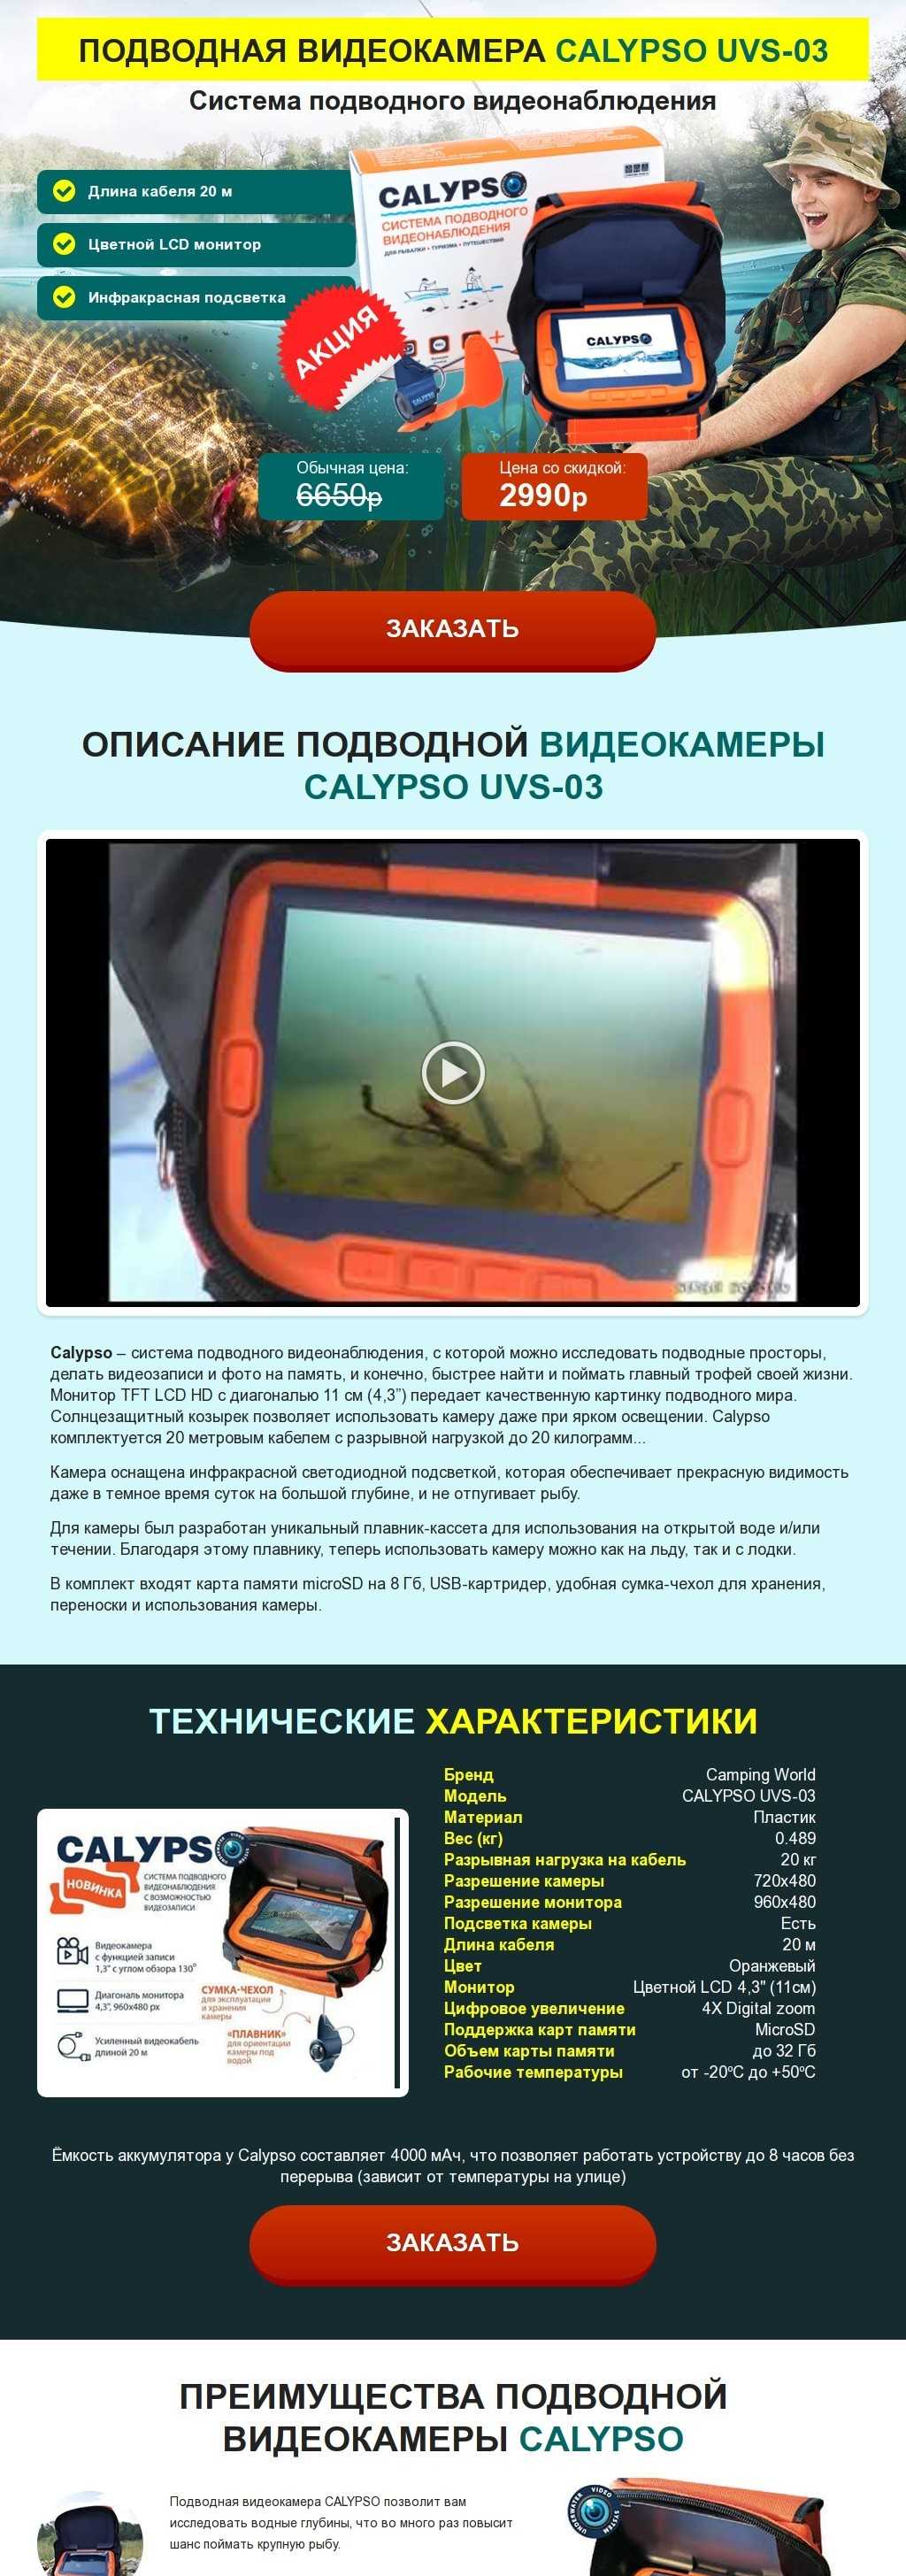 Подводная видеокамера Calypso UVS 03 - обзор, характеристики, отзывы